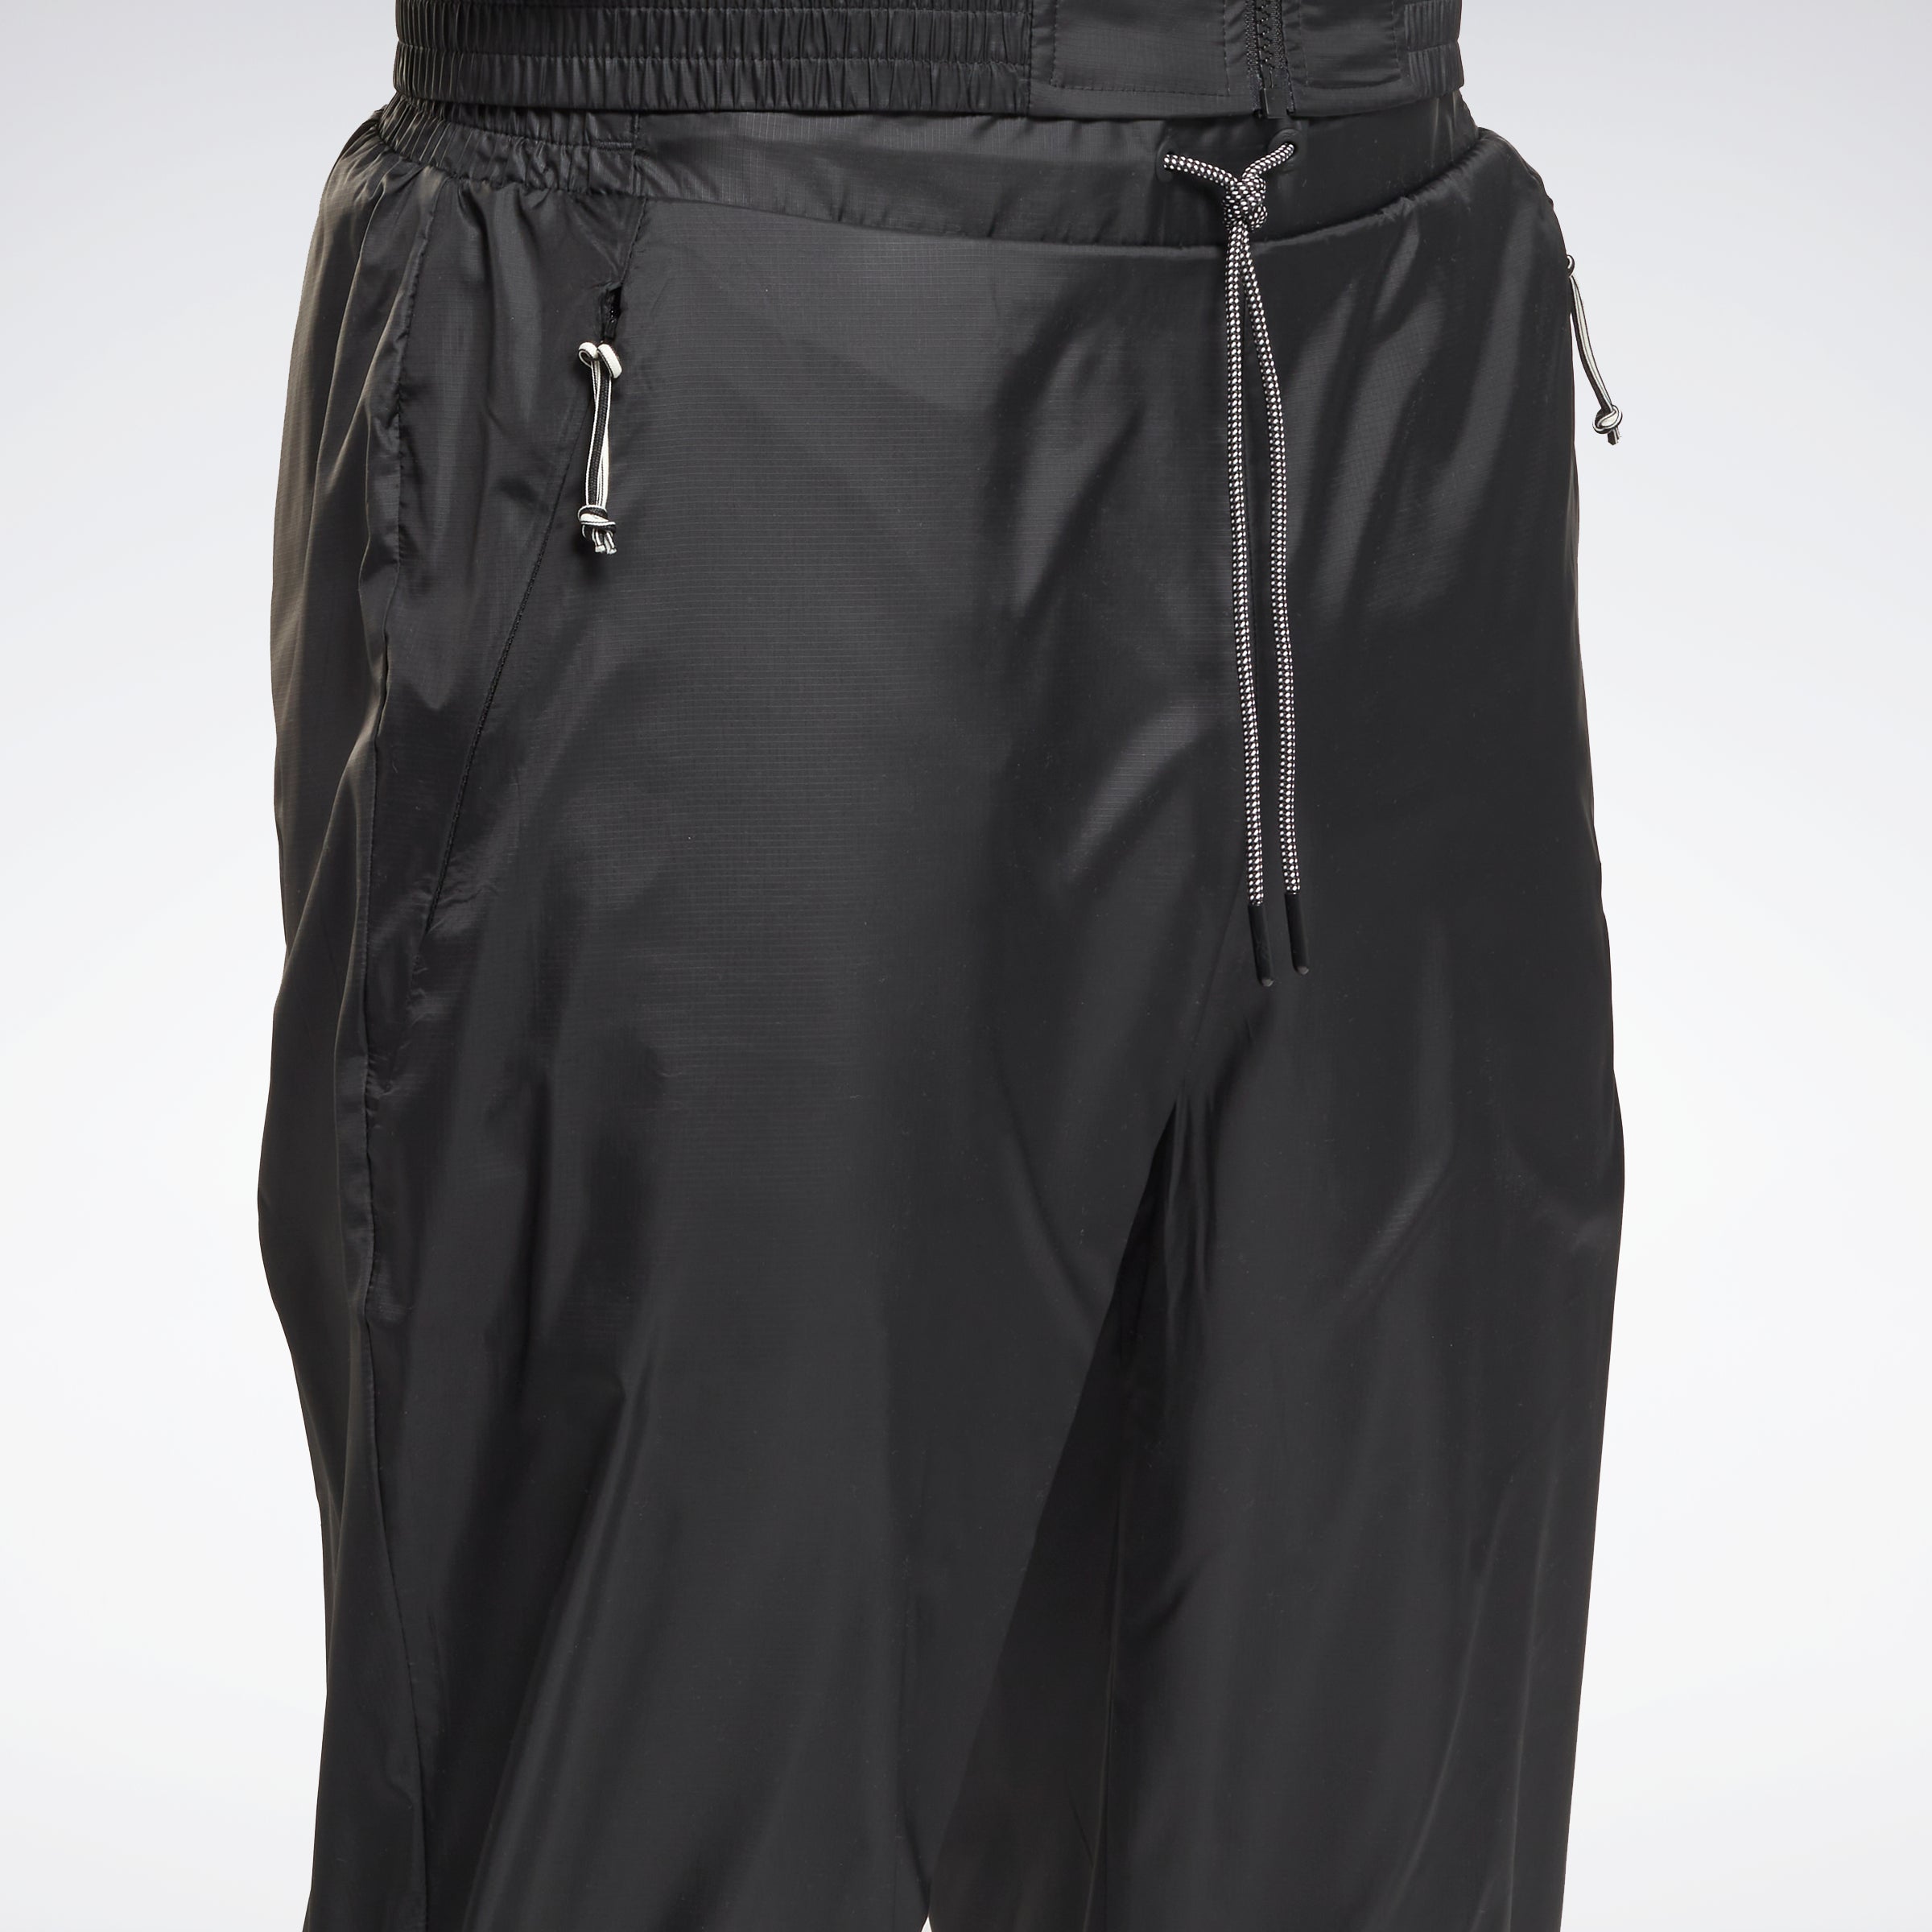 Reebok Apparel Men Outerwear Fleece-Lined Trousers Black – Reebok